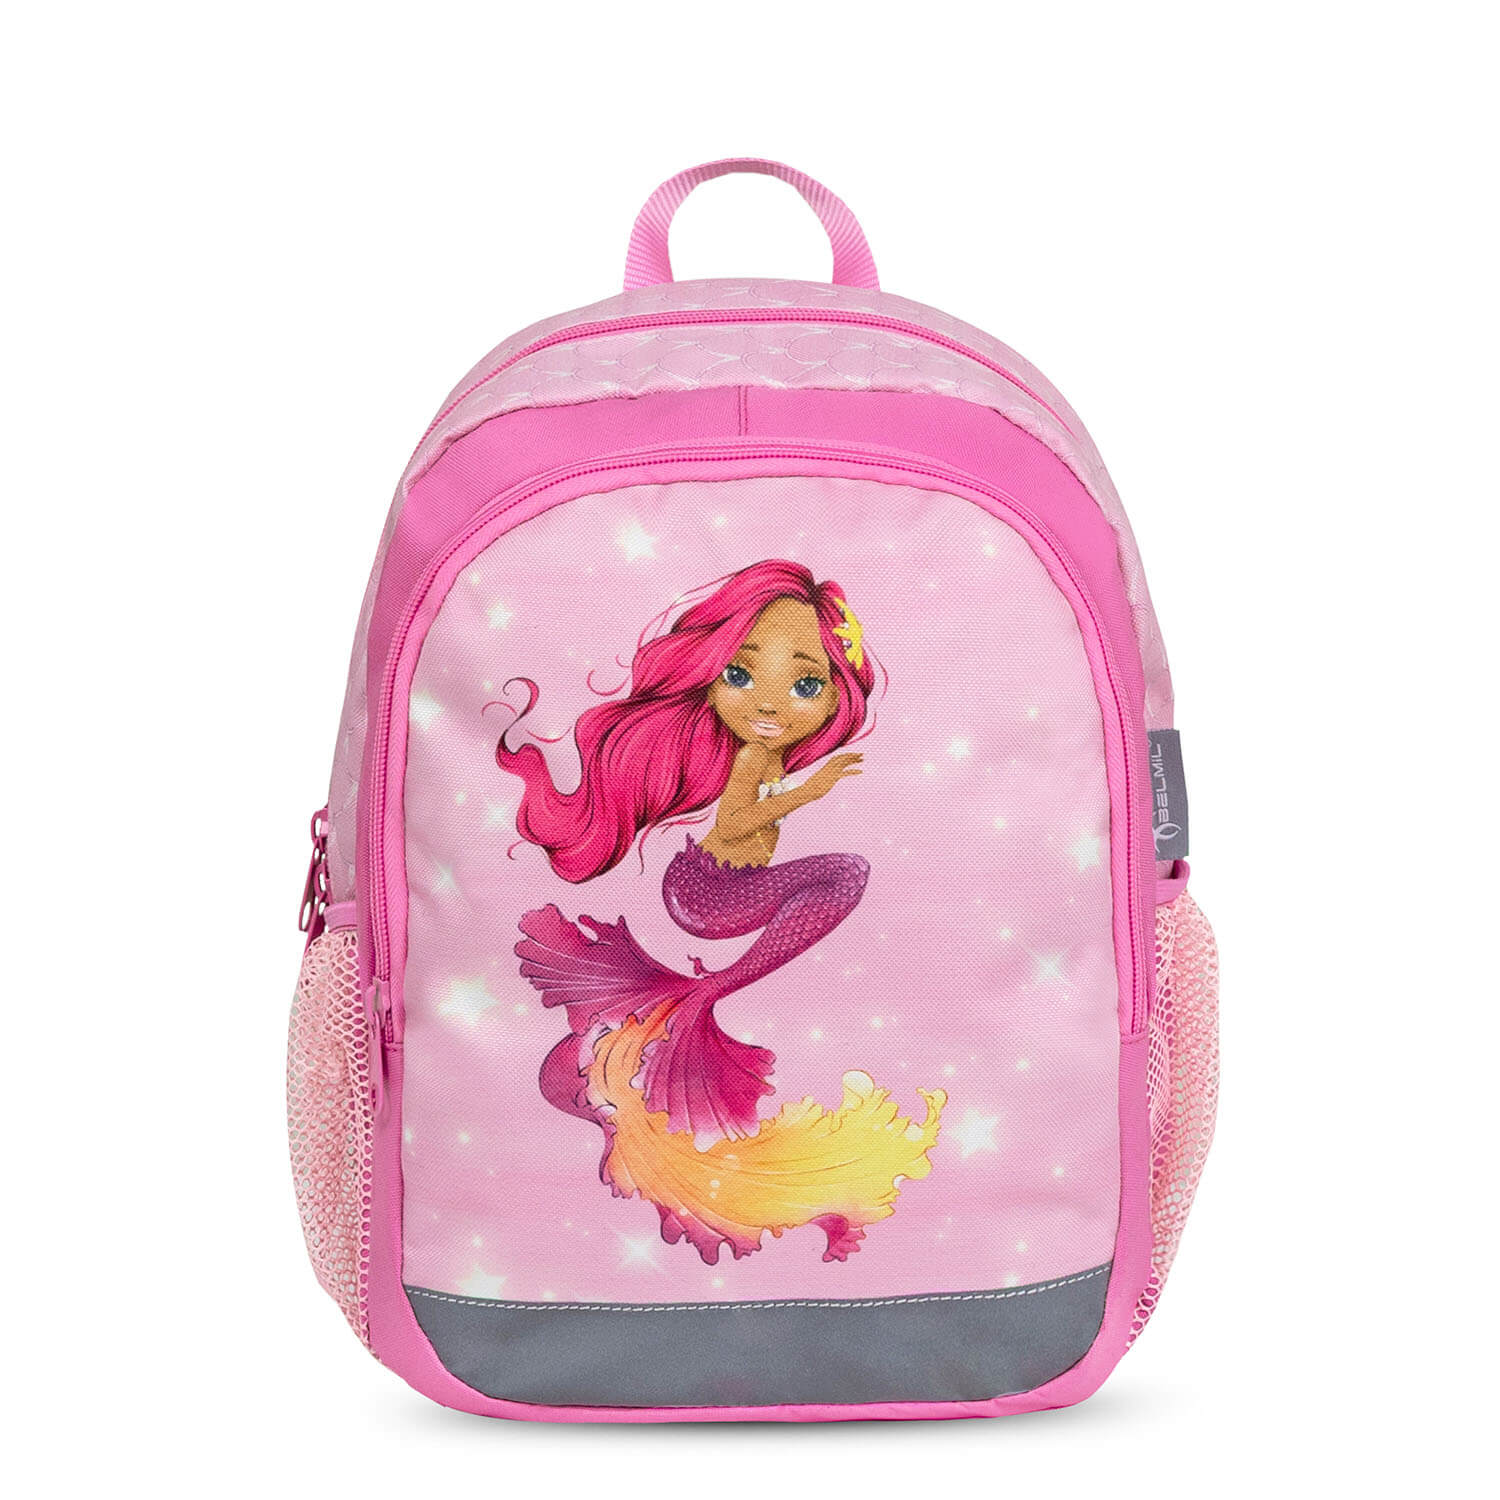 Kiddy Plus Pinky Mermaid Kindergarten Bag